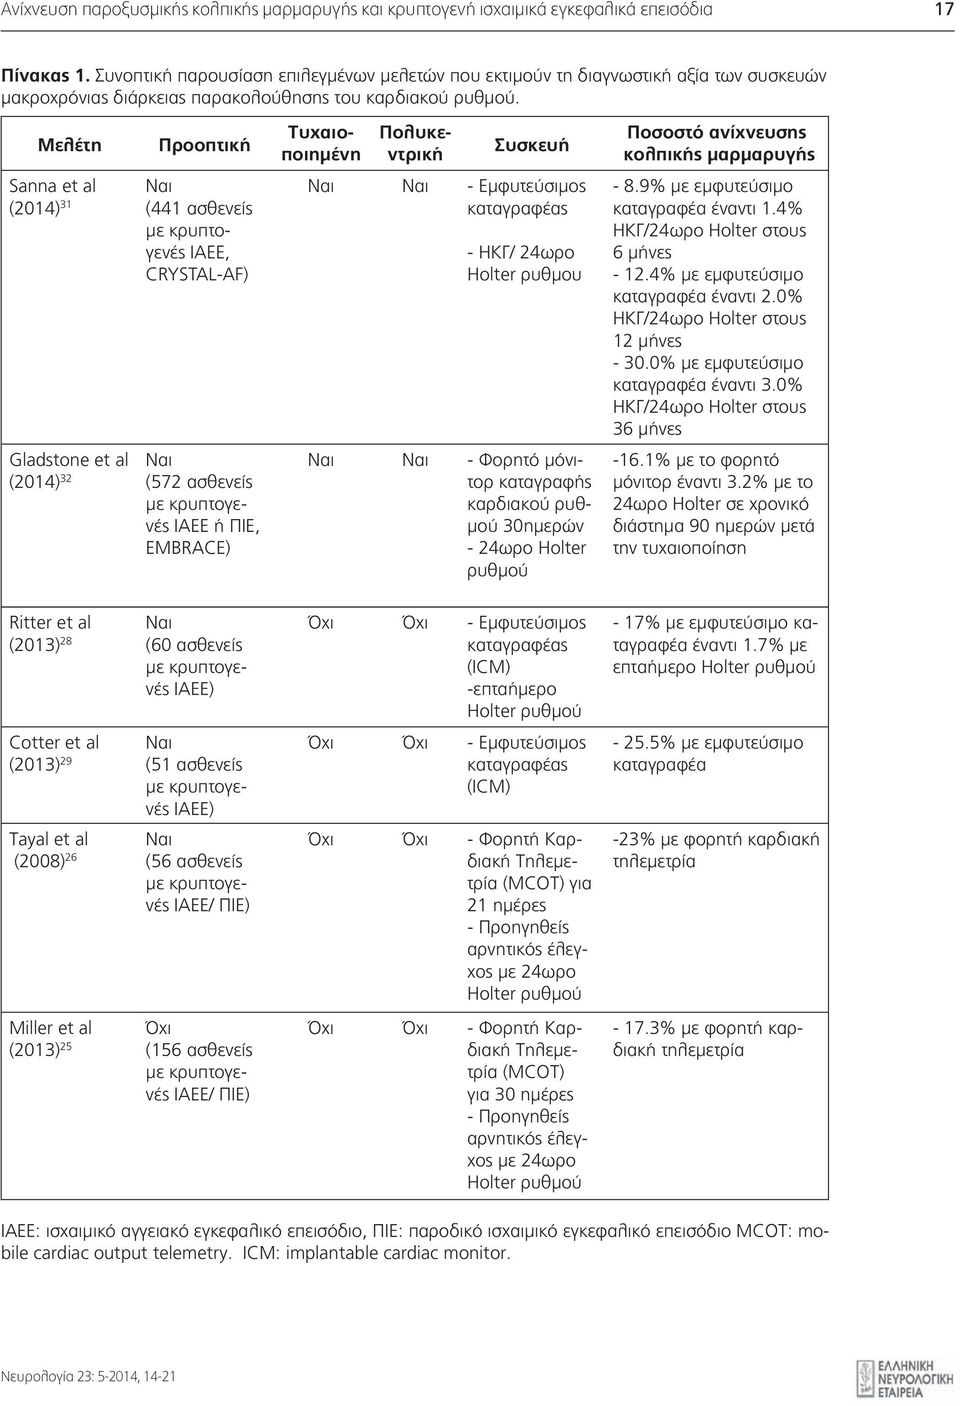 Μελέτη Προοπτική Sanna et al Ναι (2014) 31 (441 ασθενείς ΙΑΕΕ, CRYSTAL-AF) Gladstone et al Ναι (2014) 32 (572 ασθενείς ΙΑΕΕ ή ΠΙΕ, EMBRACE) Τυχαιοποιημένη Πολυκεντρική Συσκευή Ναι Ναι - Eμφυτεύσιμος